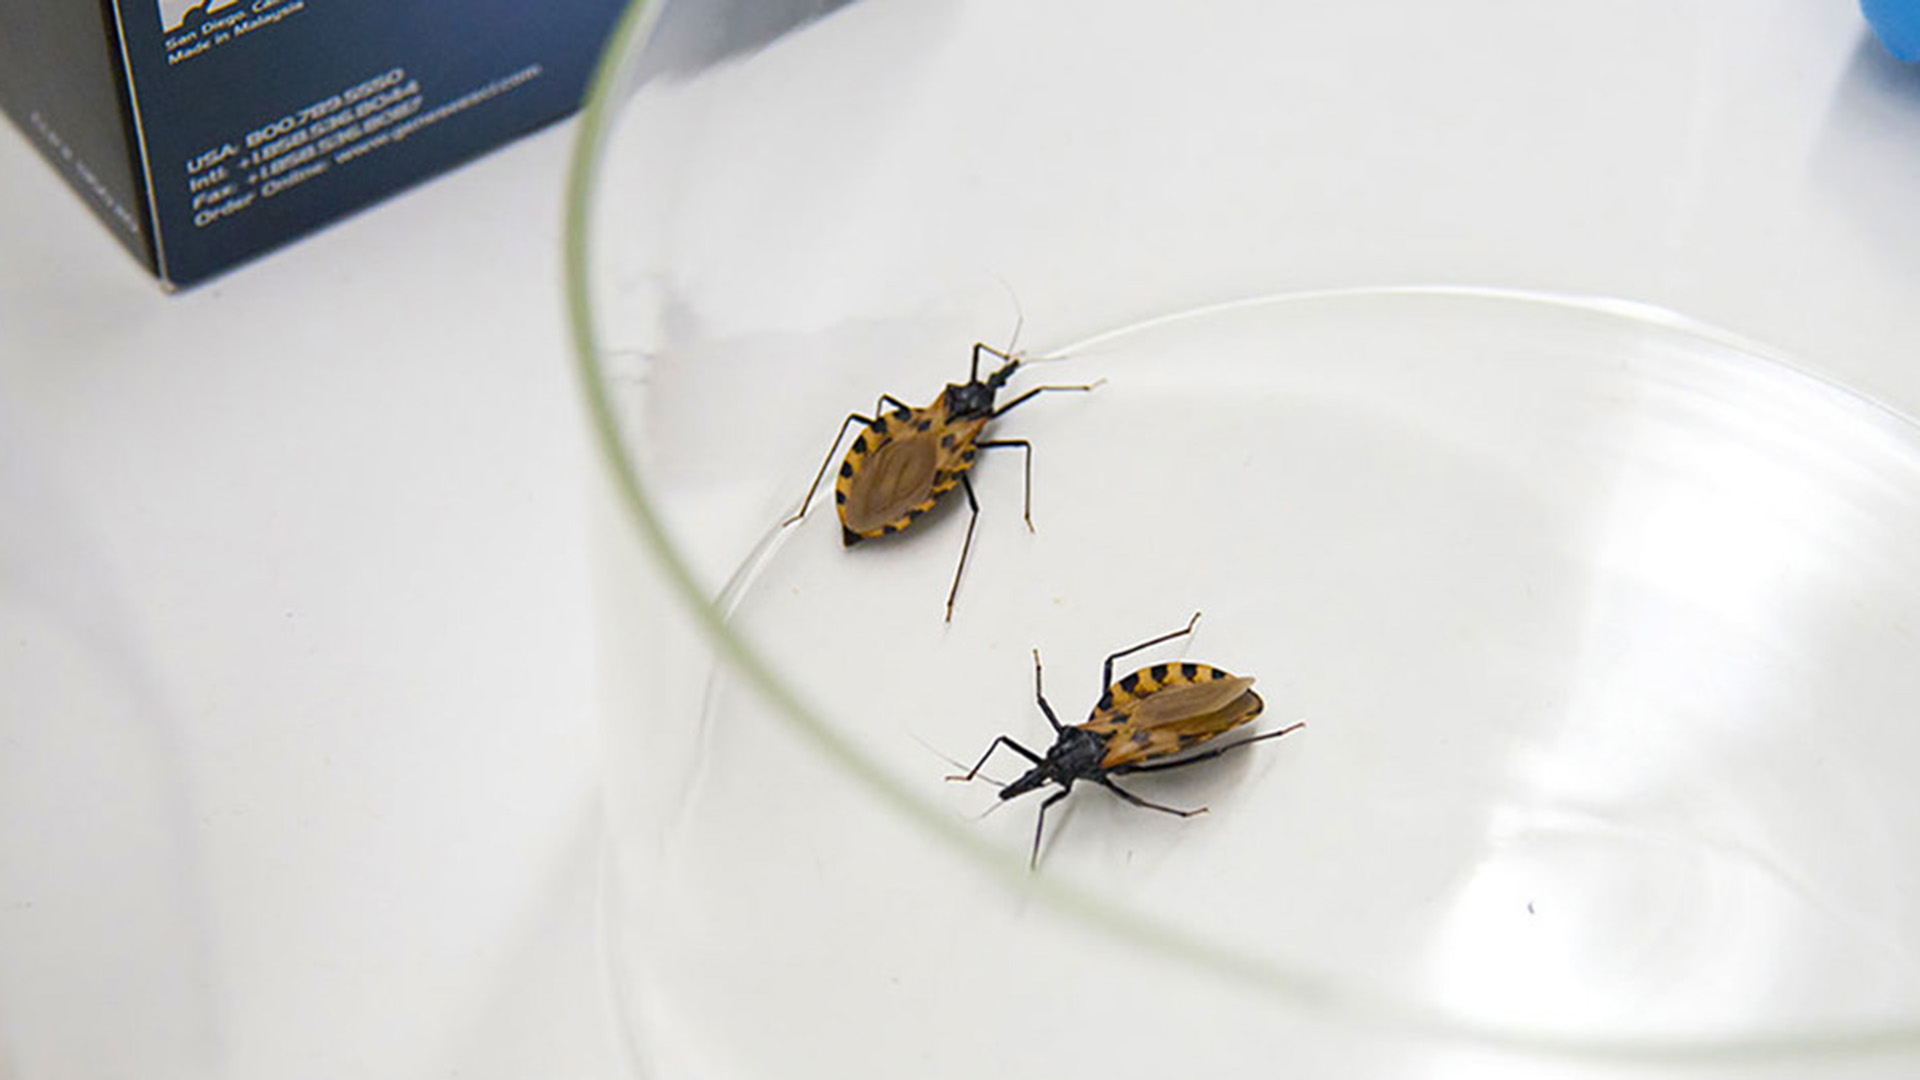 El mal de Chagas es una de las enfermedades desatendidas
(ONU: news.un.org)